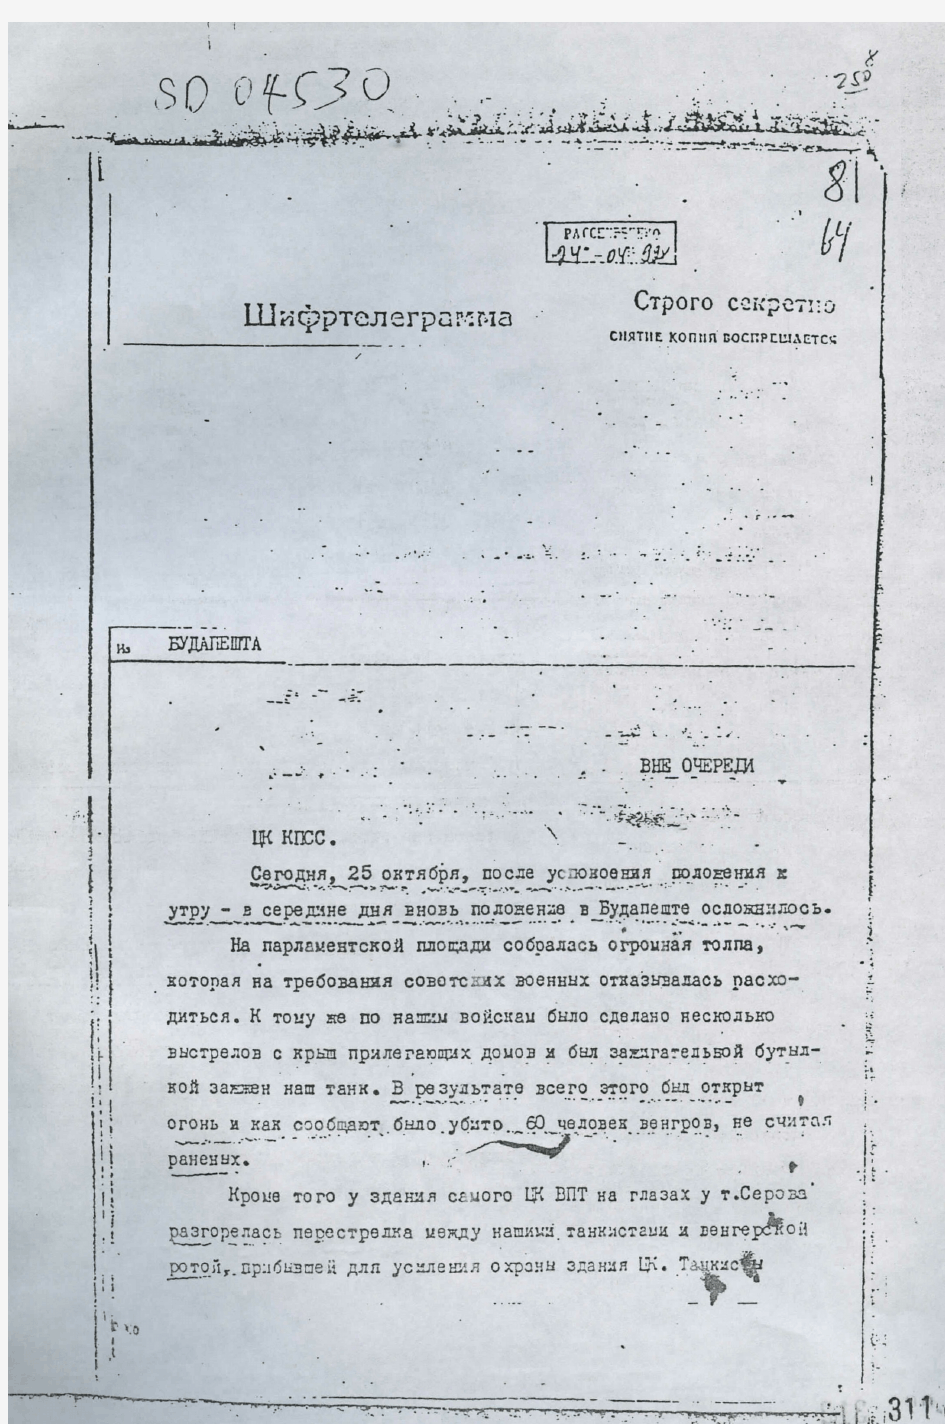 米高扬、苏斯洛夫给苏共中央的电报